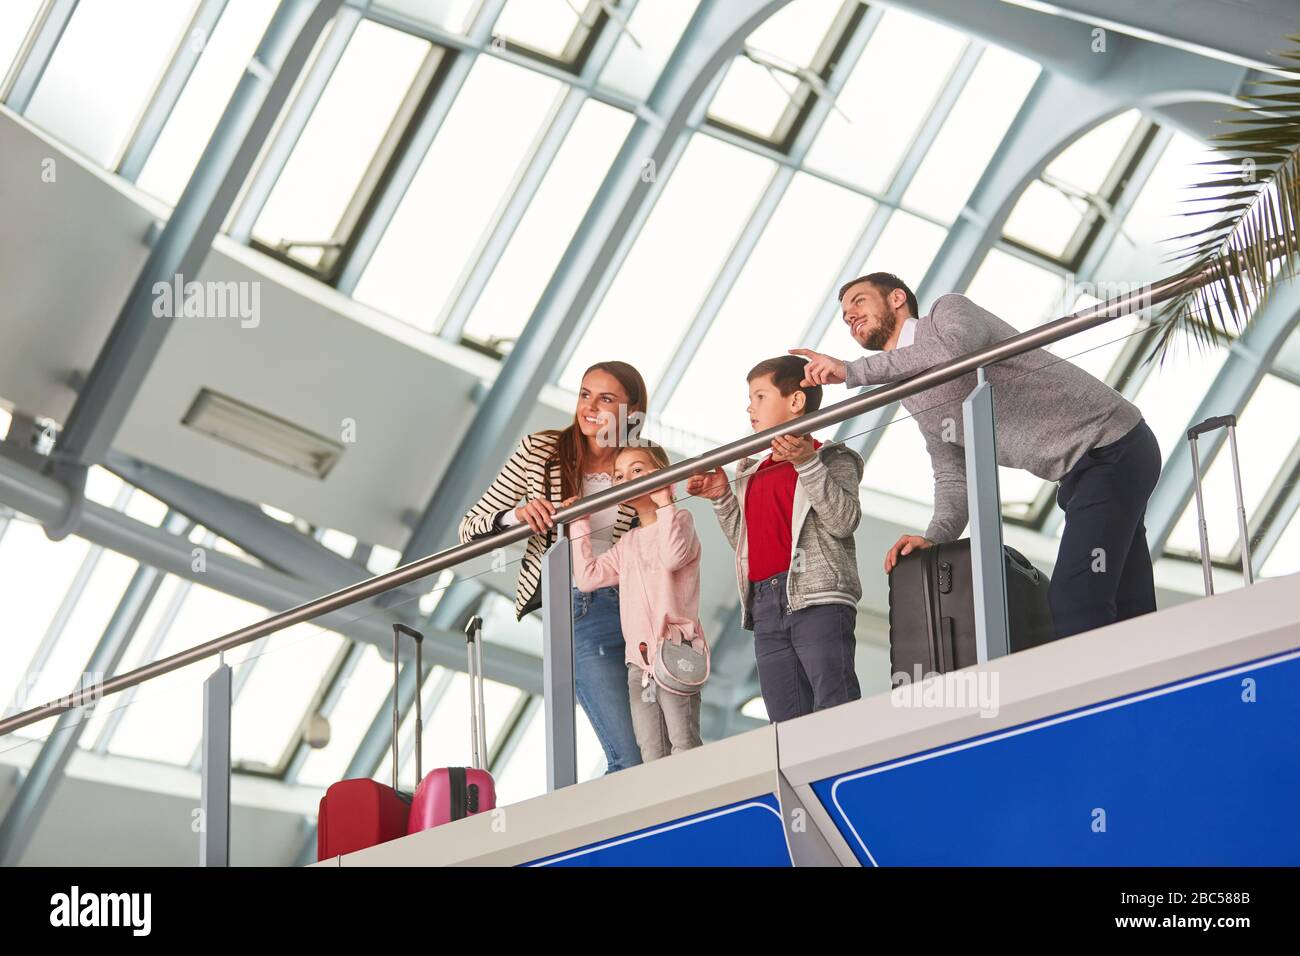 Familie mit zwei Kindern und Gepäck unterwegs im Flughafen Stockfoto